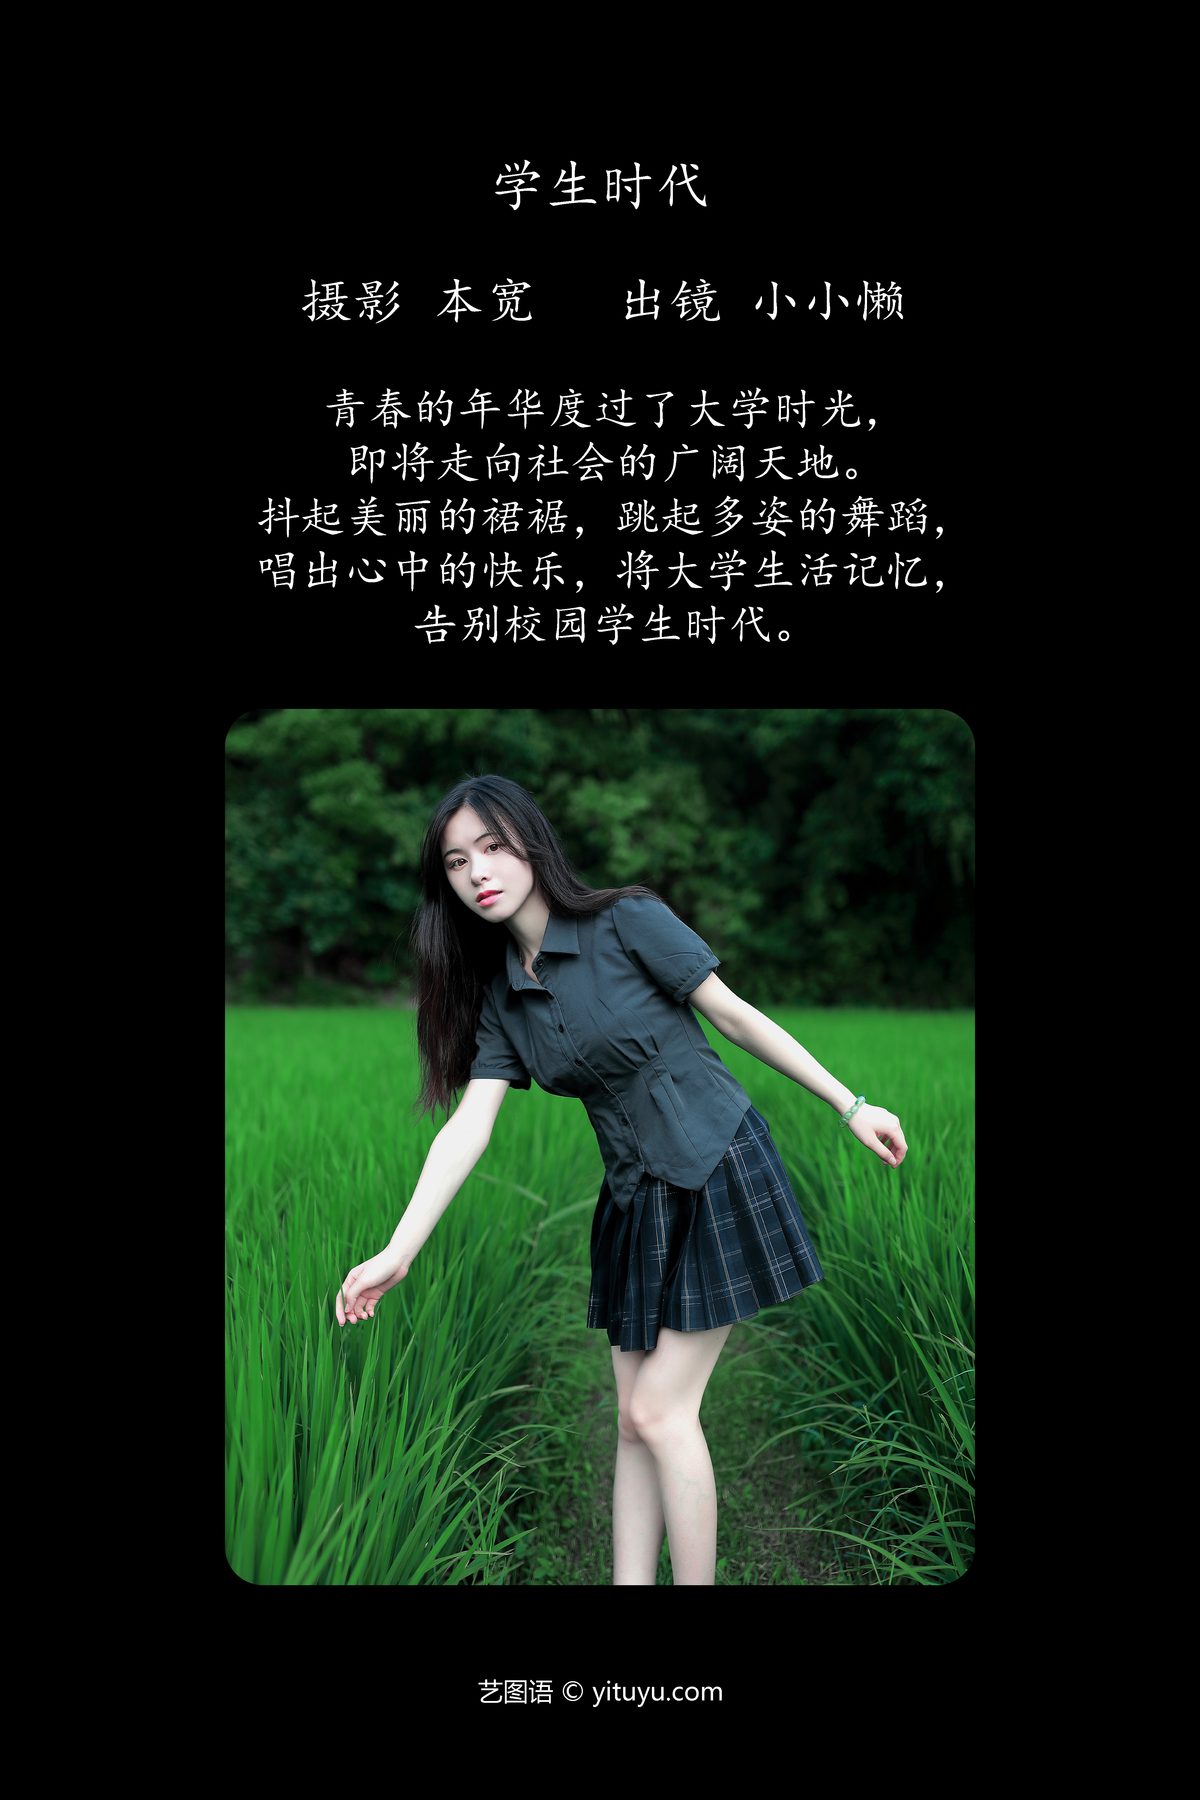 YiTuYu艺图语 Vol 5099 Xiao Xiao Lan 0001 6932763111.jpg